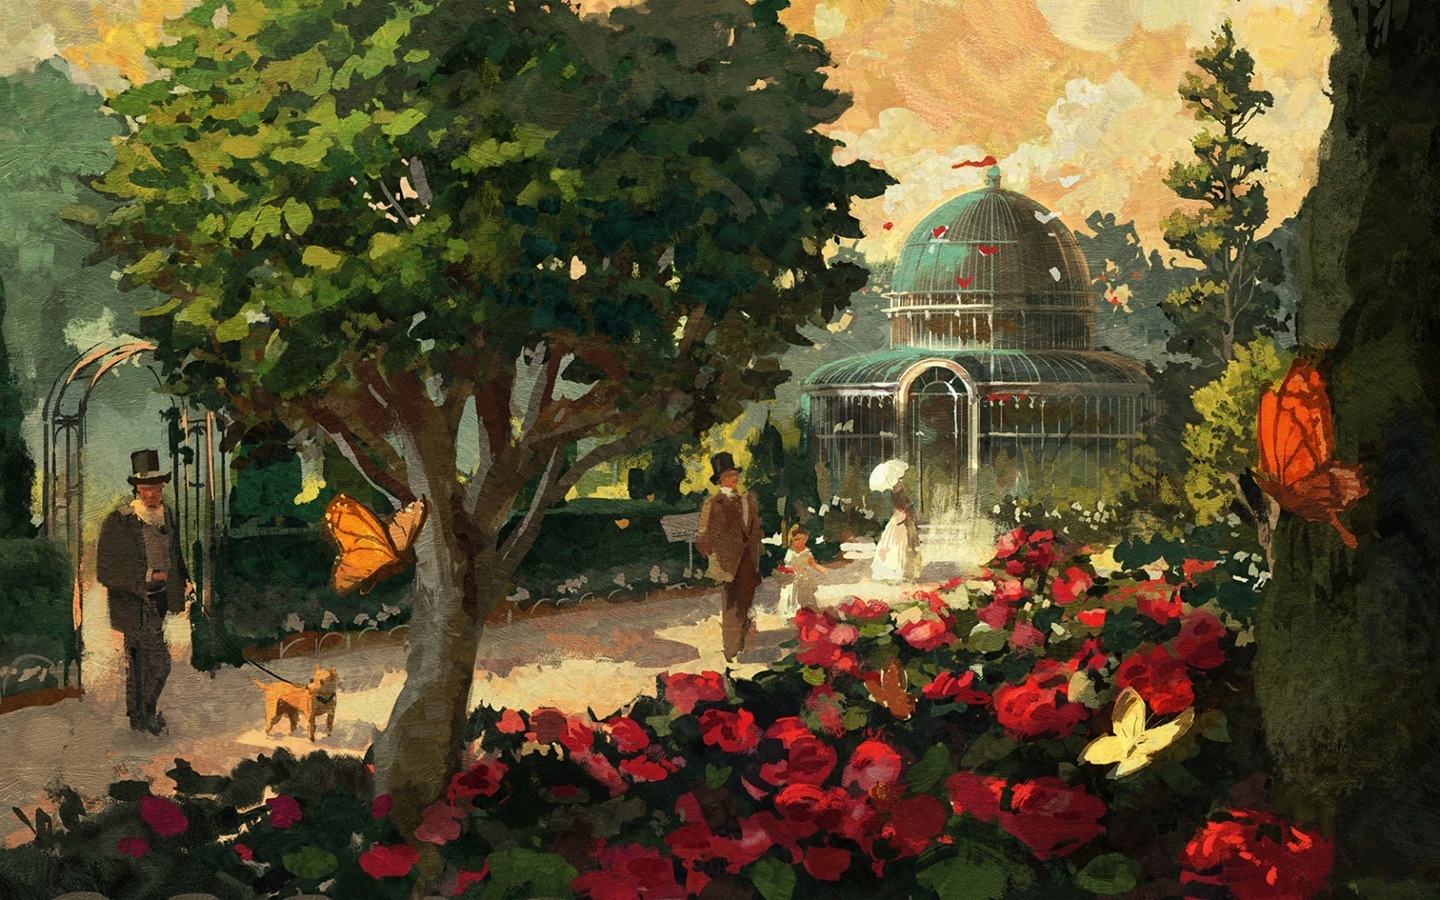 《美麗新世界 1800》 第二款 DLC 植物園推出~超過21個植物模組、59種植物種類！還加碼免費更新晝夜變化